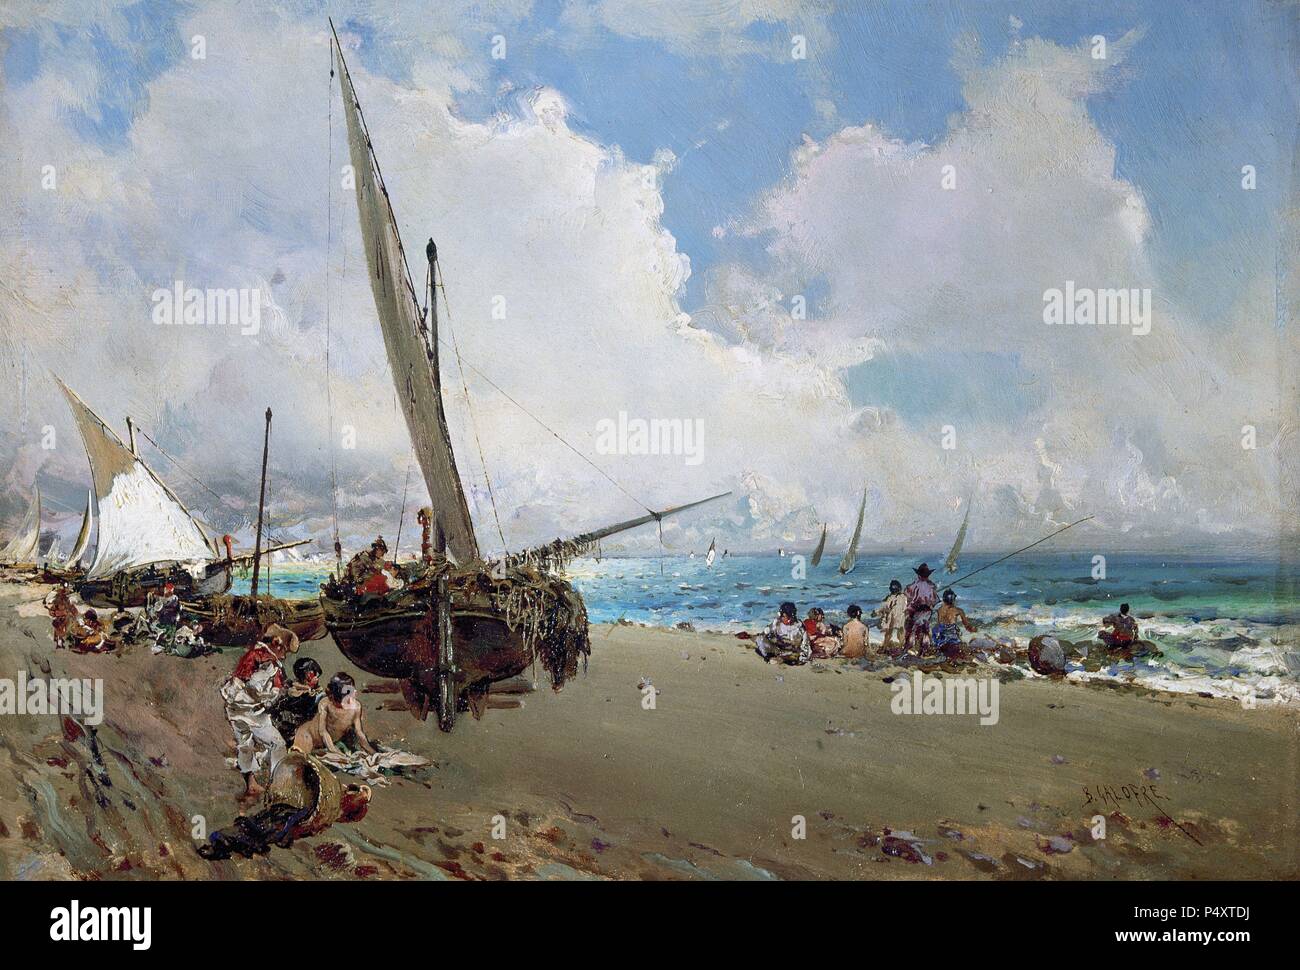 Baldomero Galofre Gimenez (1849-1902). Peintre espagnol. "Sur la plage" (fin xixe siècle). Musée des beaux-arts de Buenos Aires. L'Argentine. Banque D'Images